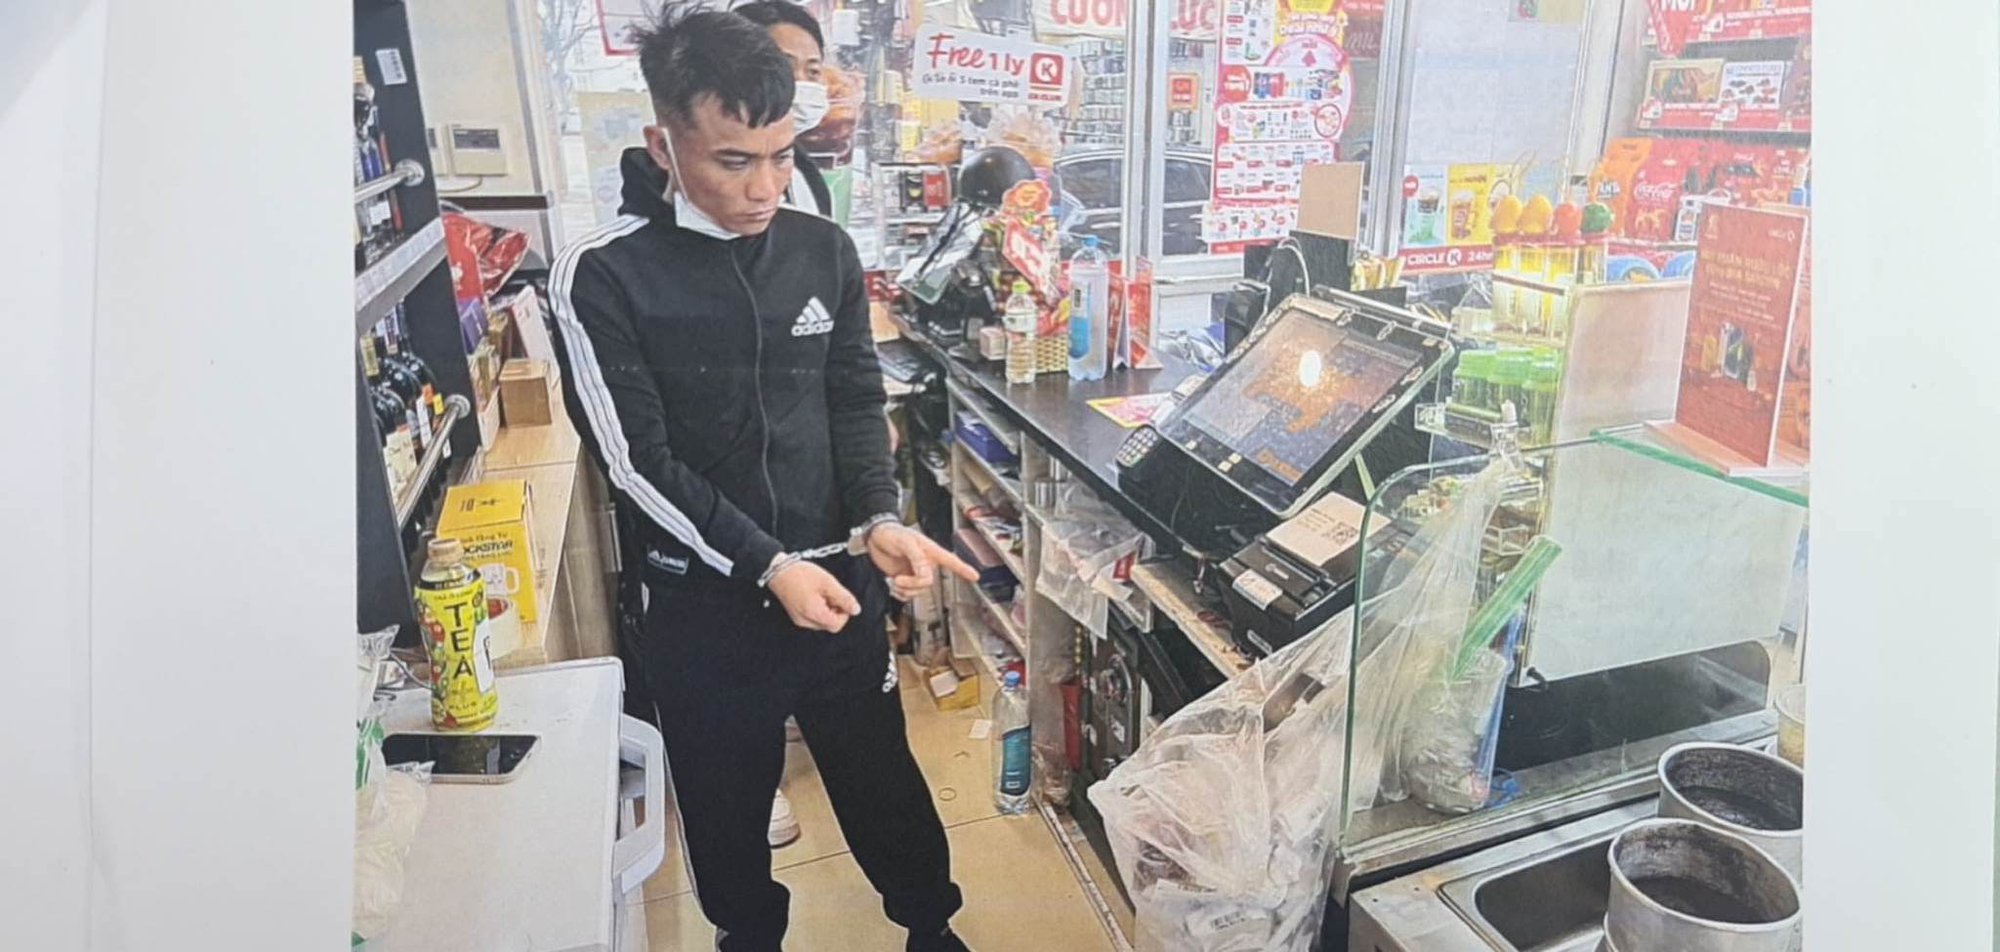 Gã trai táo tợn cầm dao bầu cướp đến 4 cửa hàng tiện lợi ở Hà Nội - Ảnh 2.